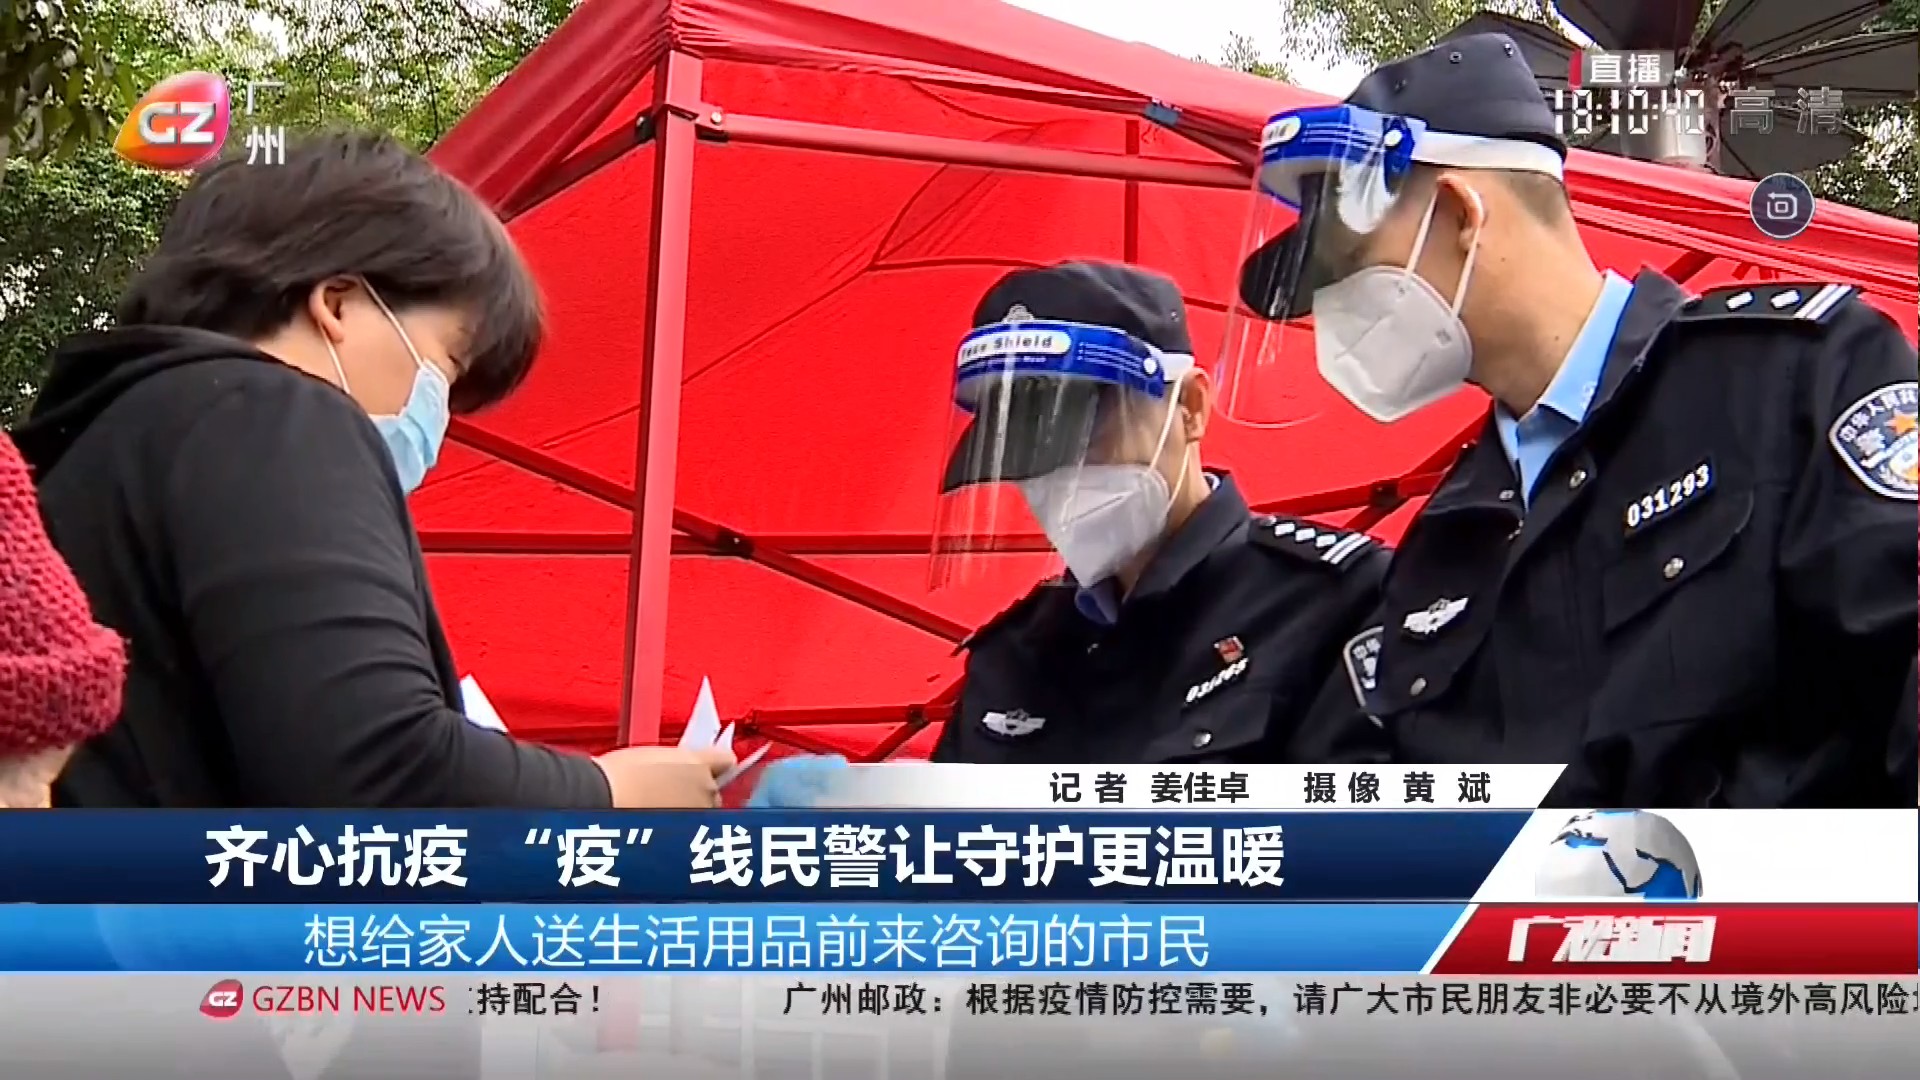 20220417广州台综合频道 广视新闻 齐心抗疫 “疫”线民警让守护更温暖